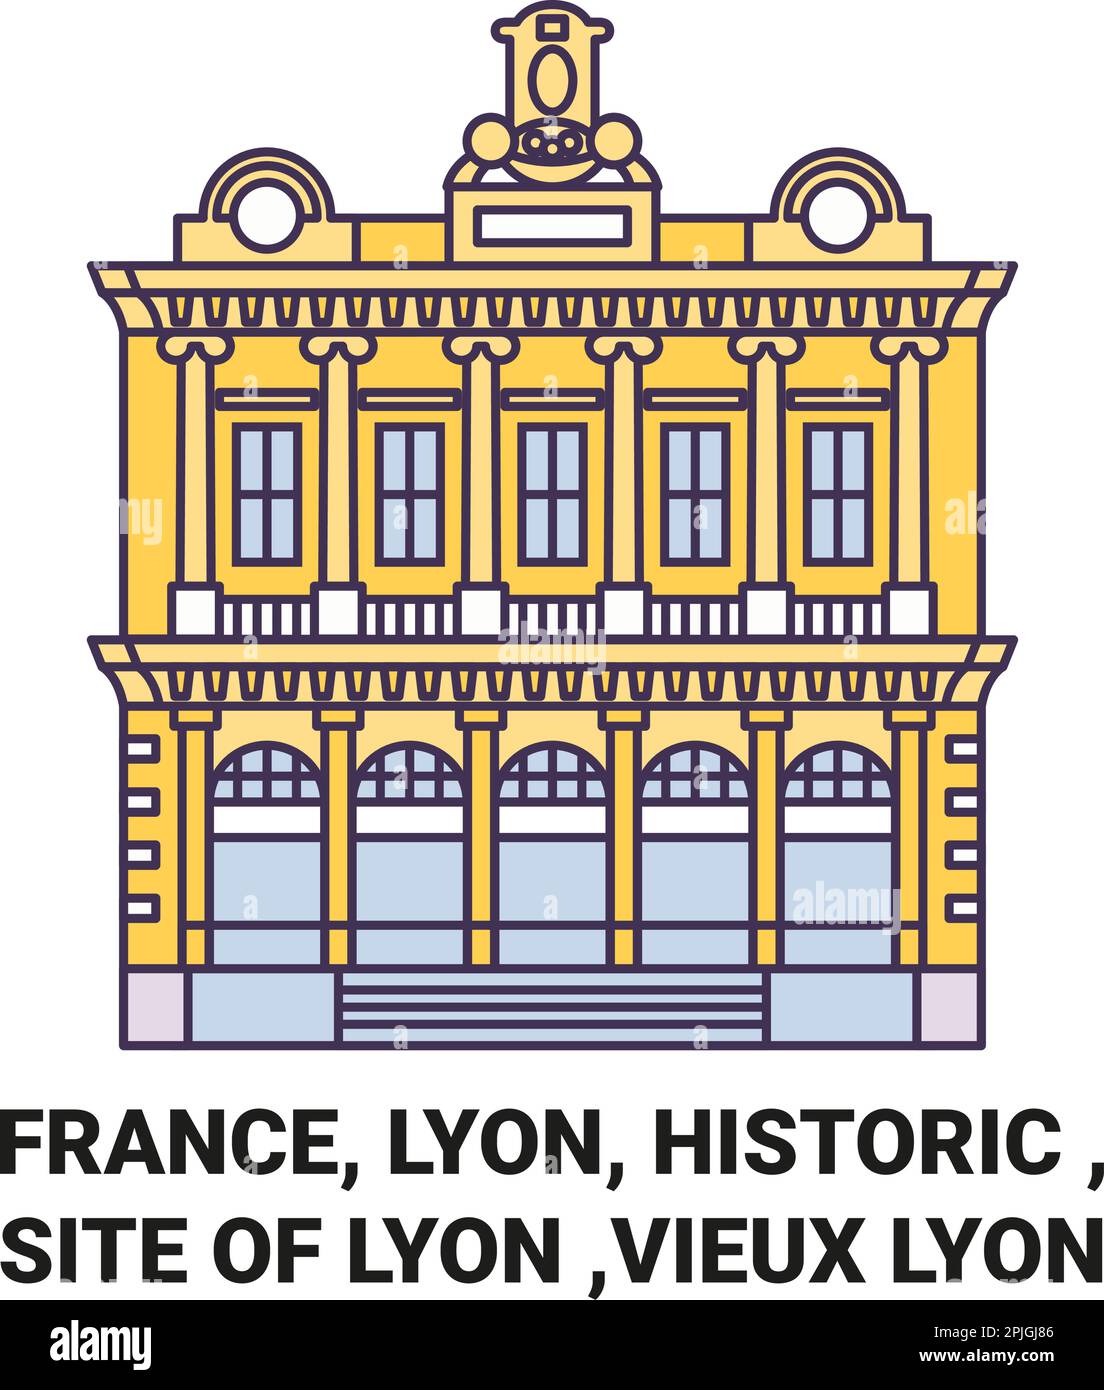 Frankreich, Lyon, historisch , Stätte Lyon , Vieux Lyon Reise Wahrzeichen Vektordarstellung Stock Vektor